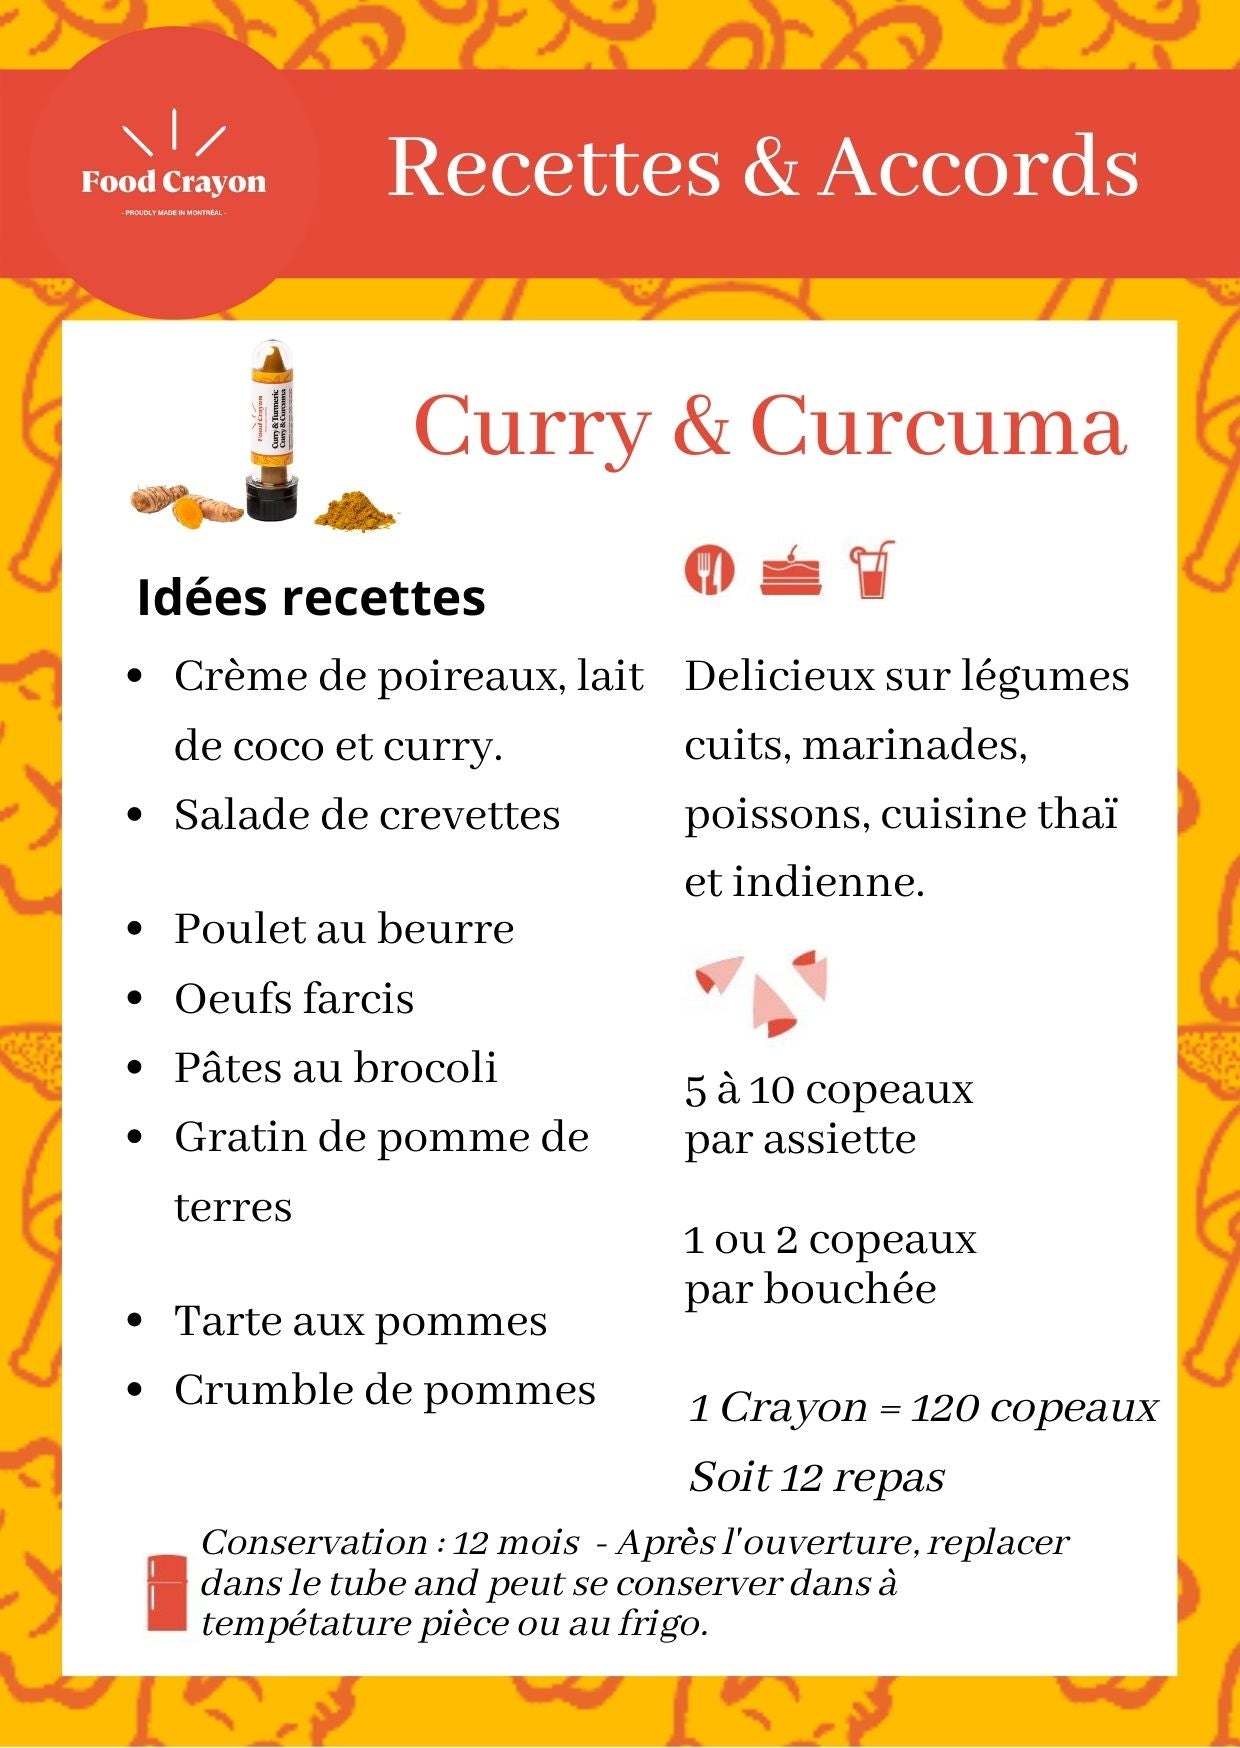 Curry & Curcuma